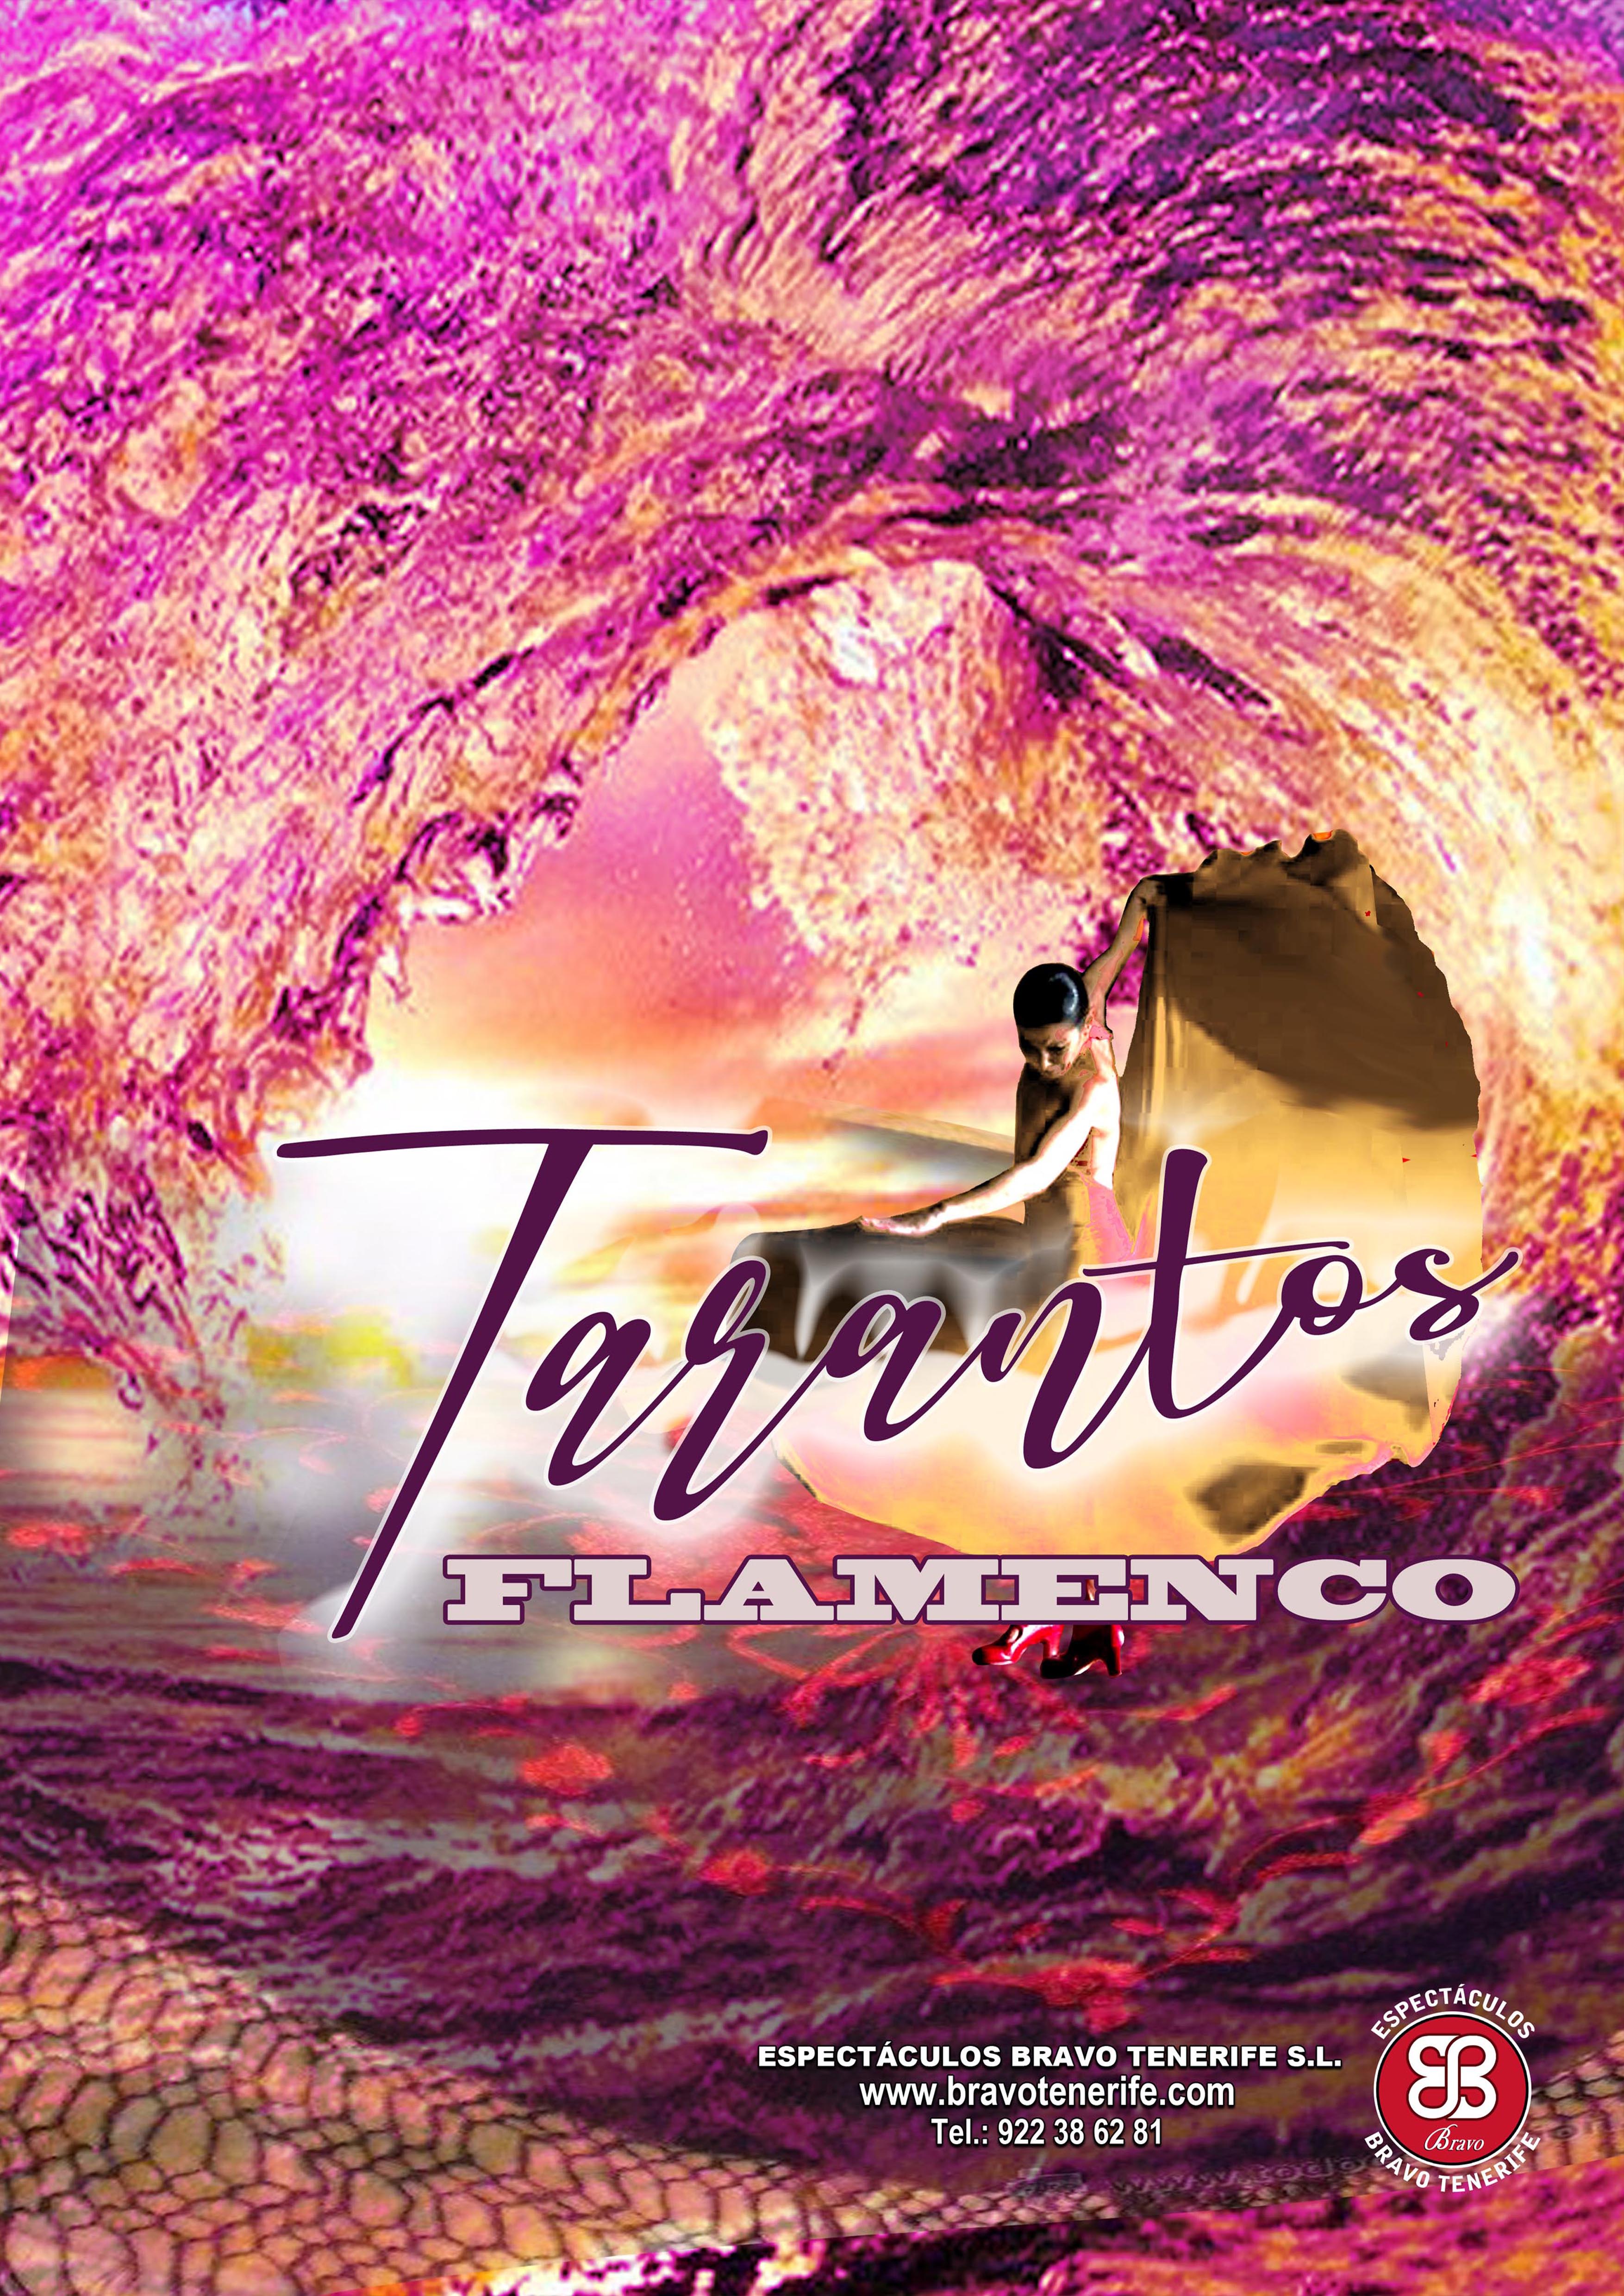 flamenco-tarantos-